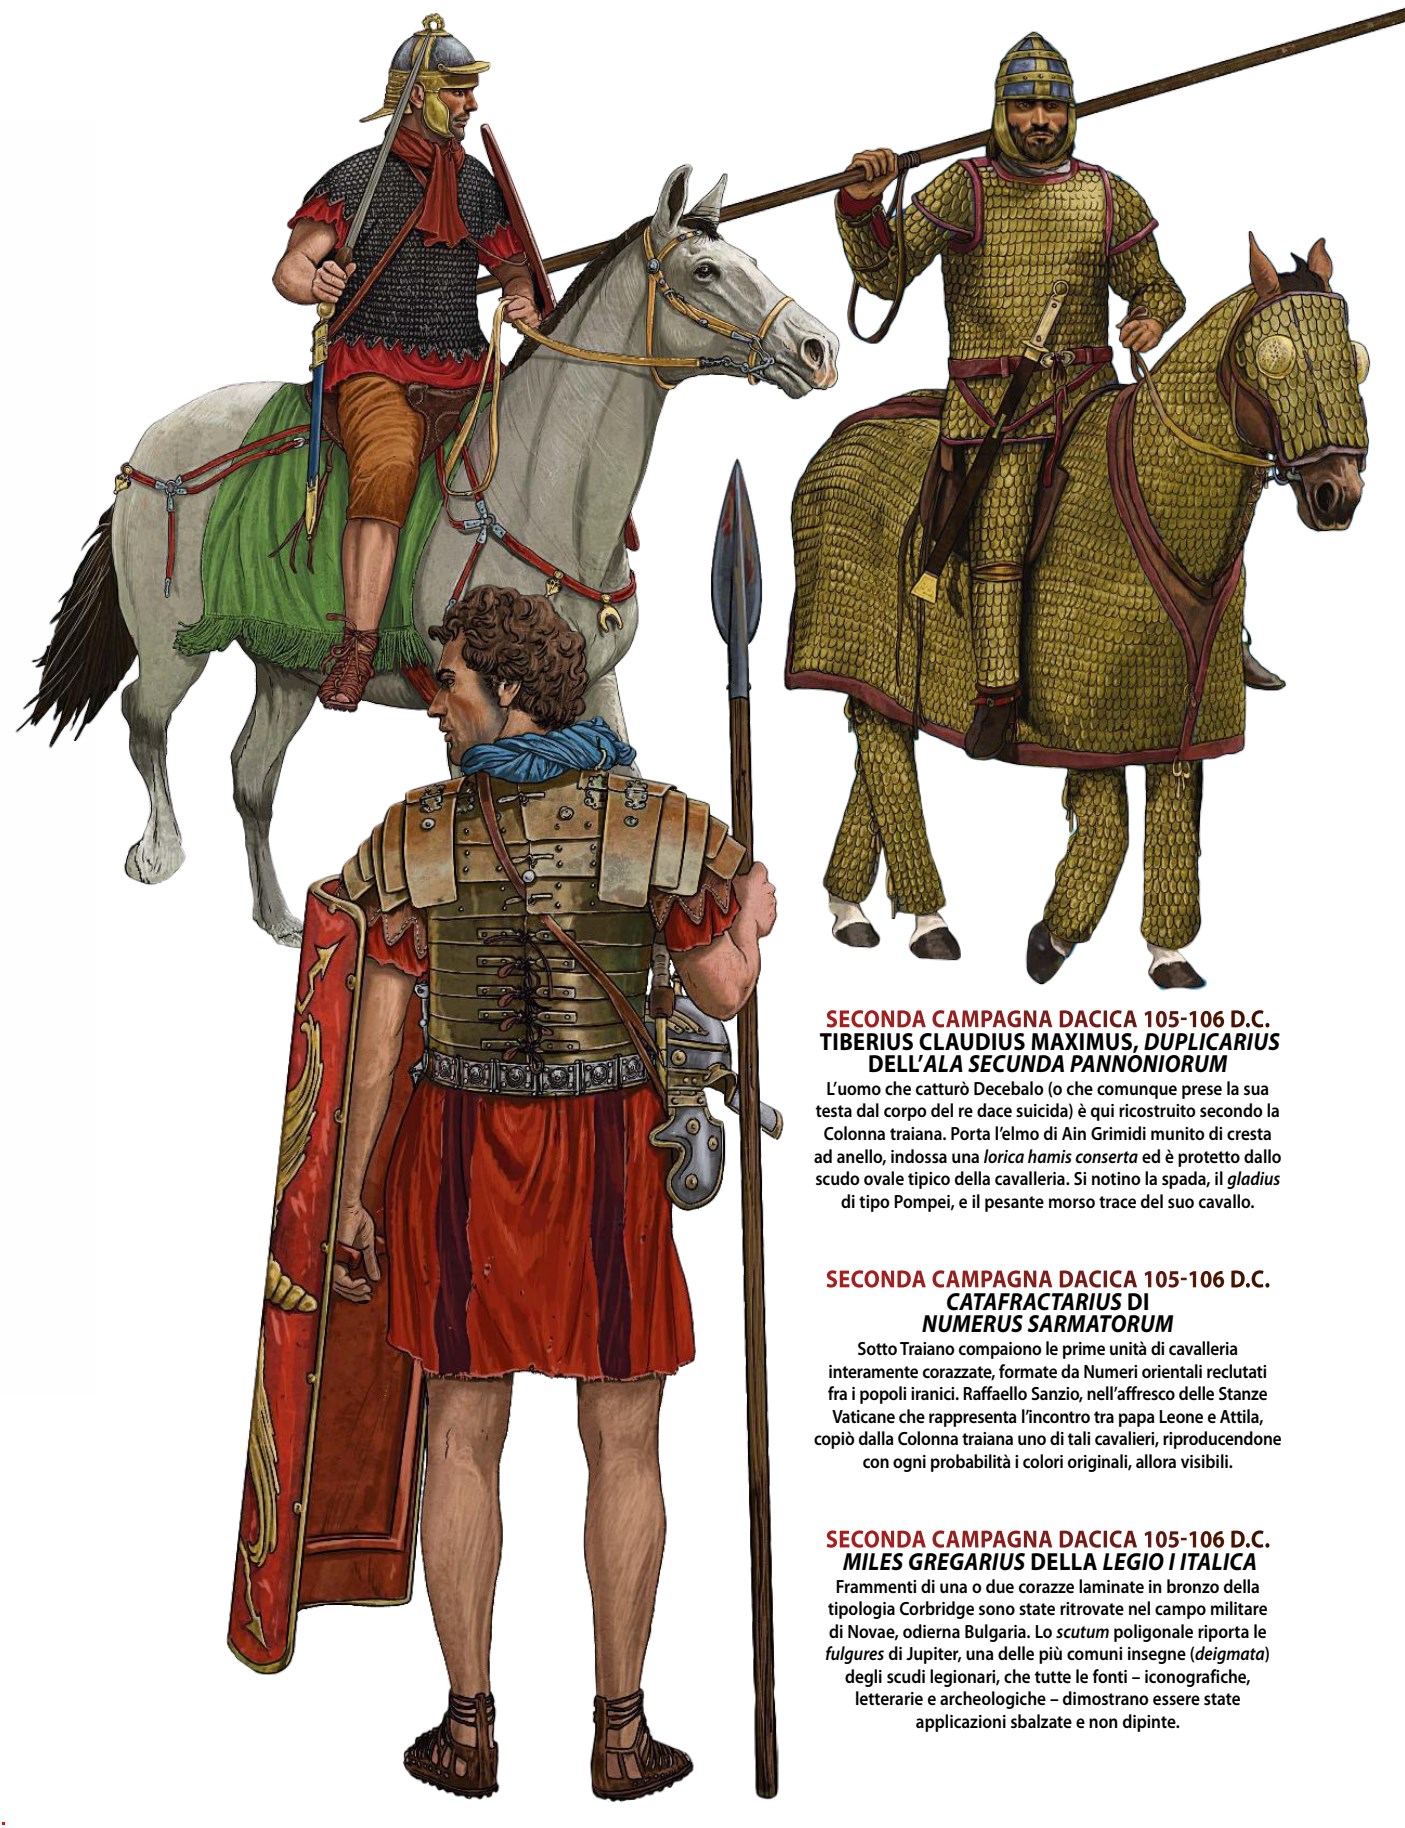 1706491682 836 Roman Emperors on Campaign